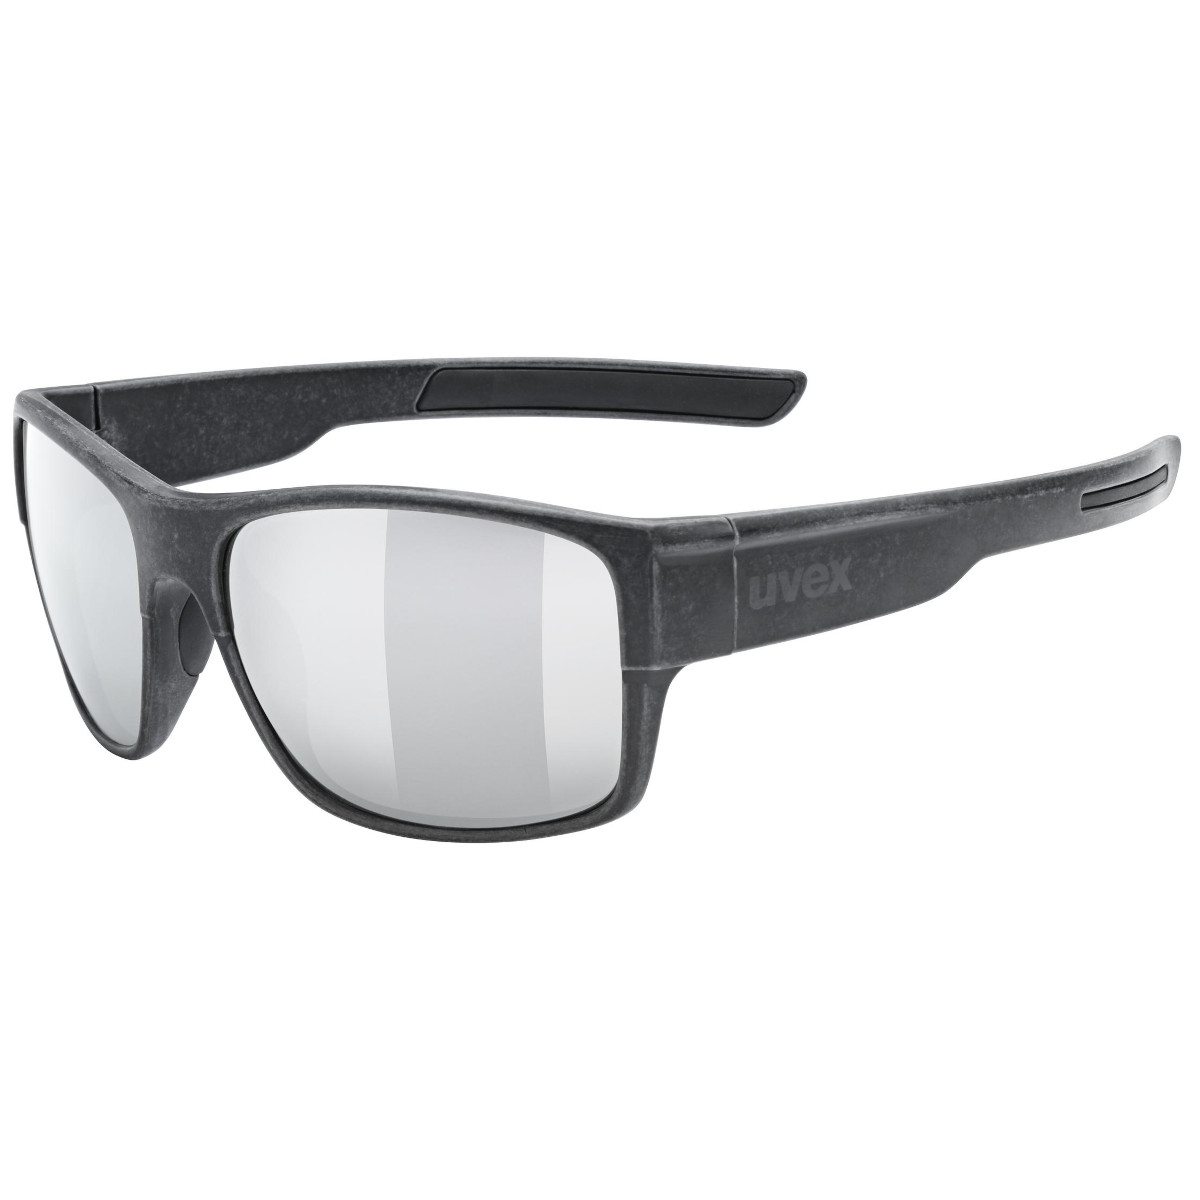 Produktbild von Uvex esntl urban Brille - black matt/mirror silver